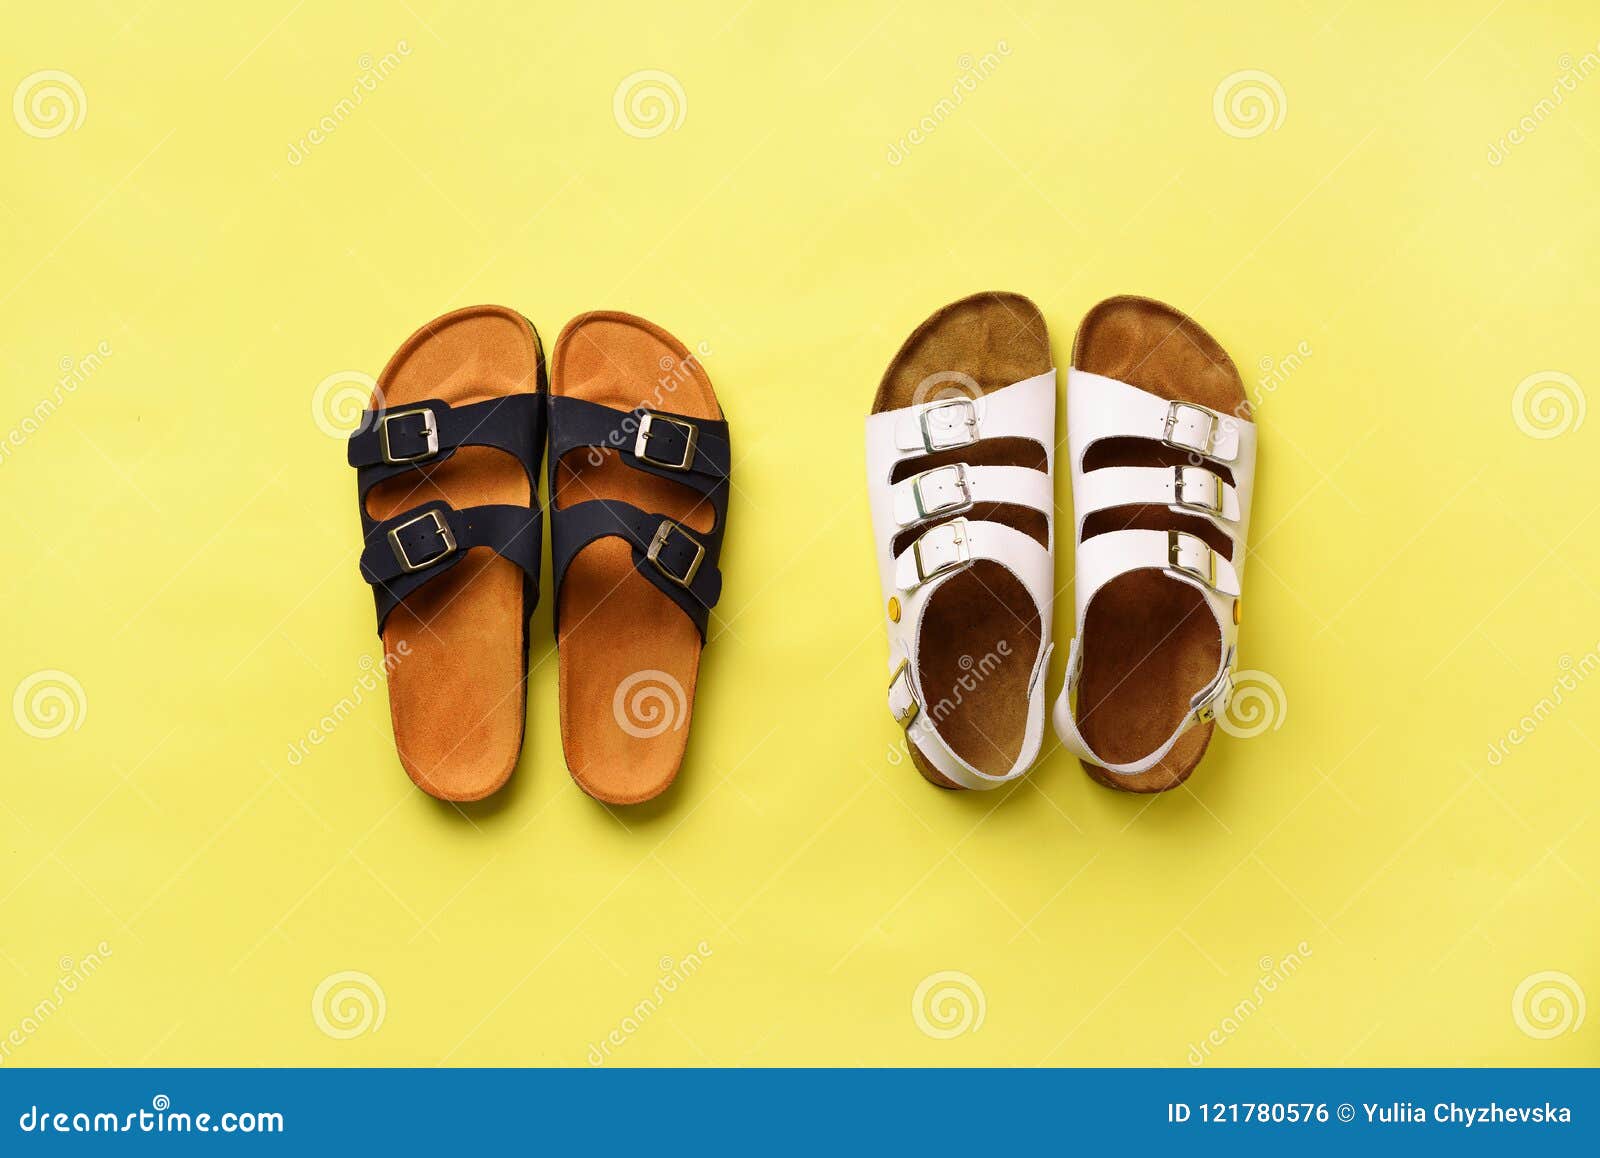 summer sandals birkenstock